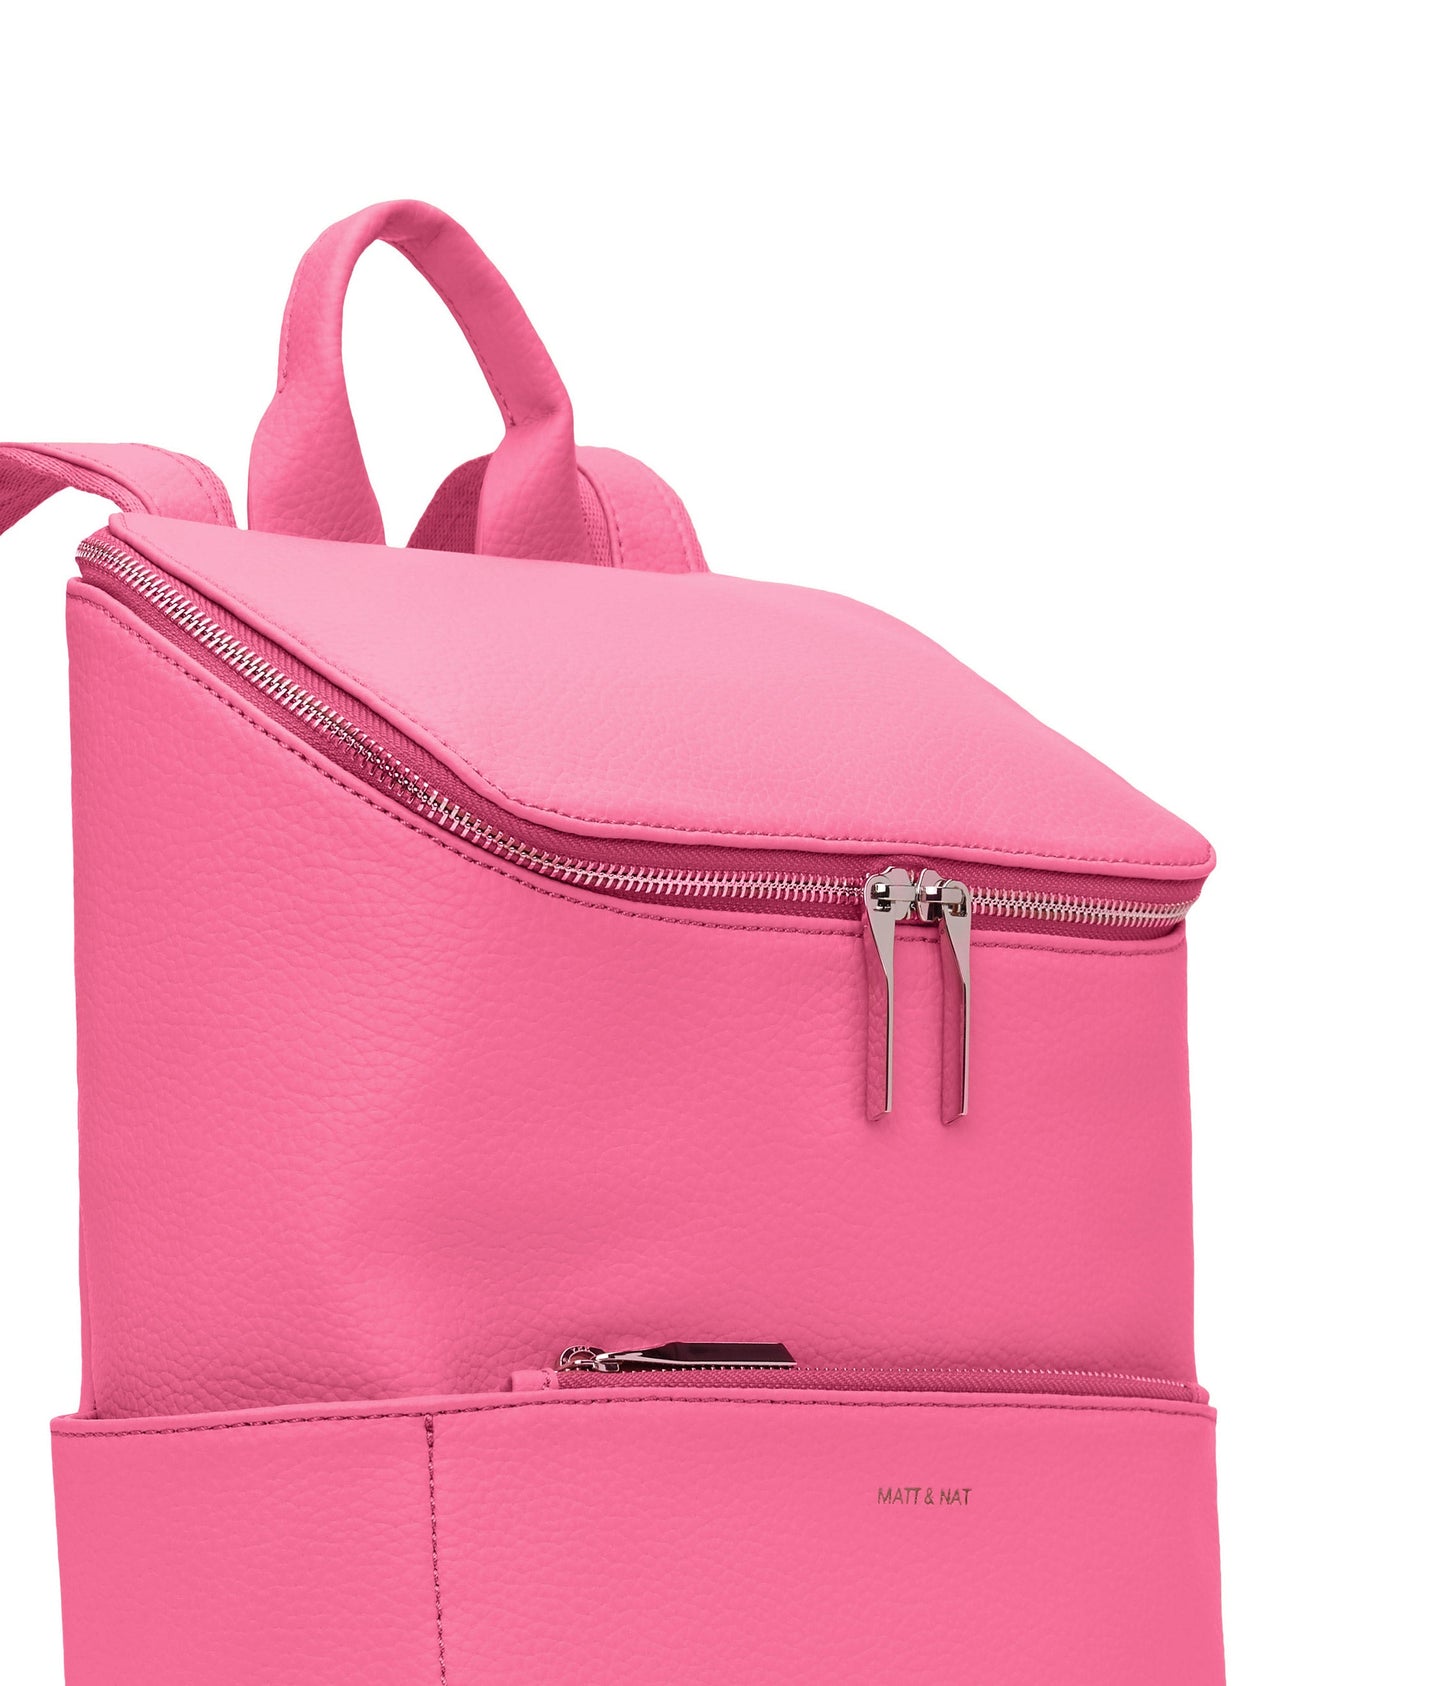 BRAVE Vegan Backpack - Purity | Color: Pink - variant::rosebud